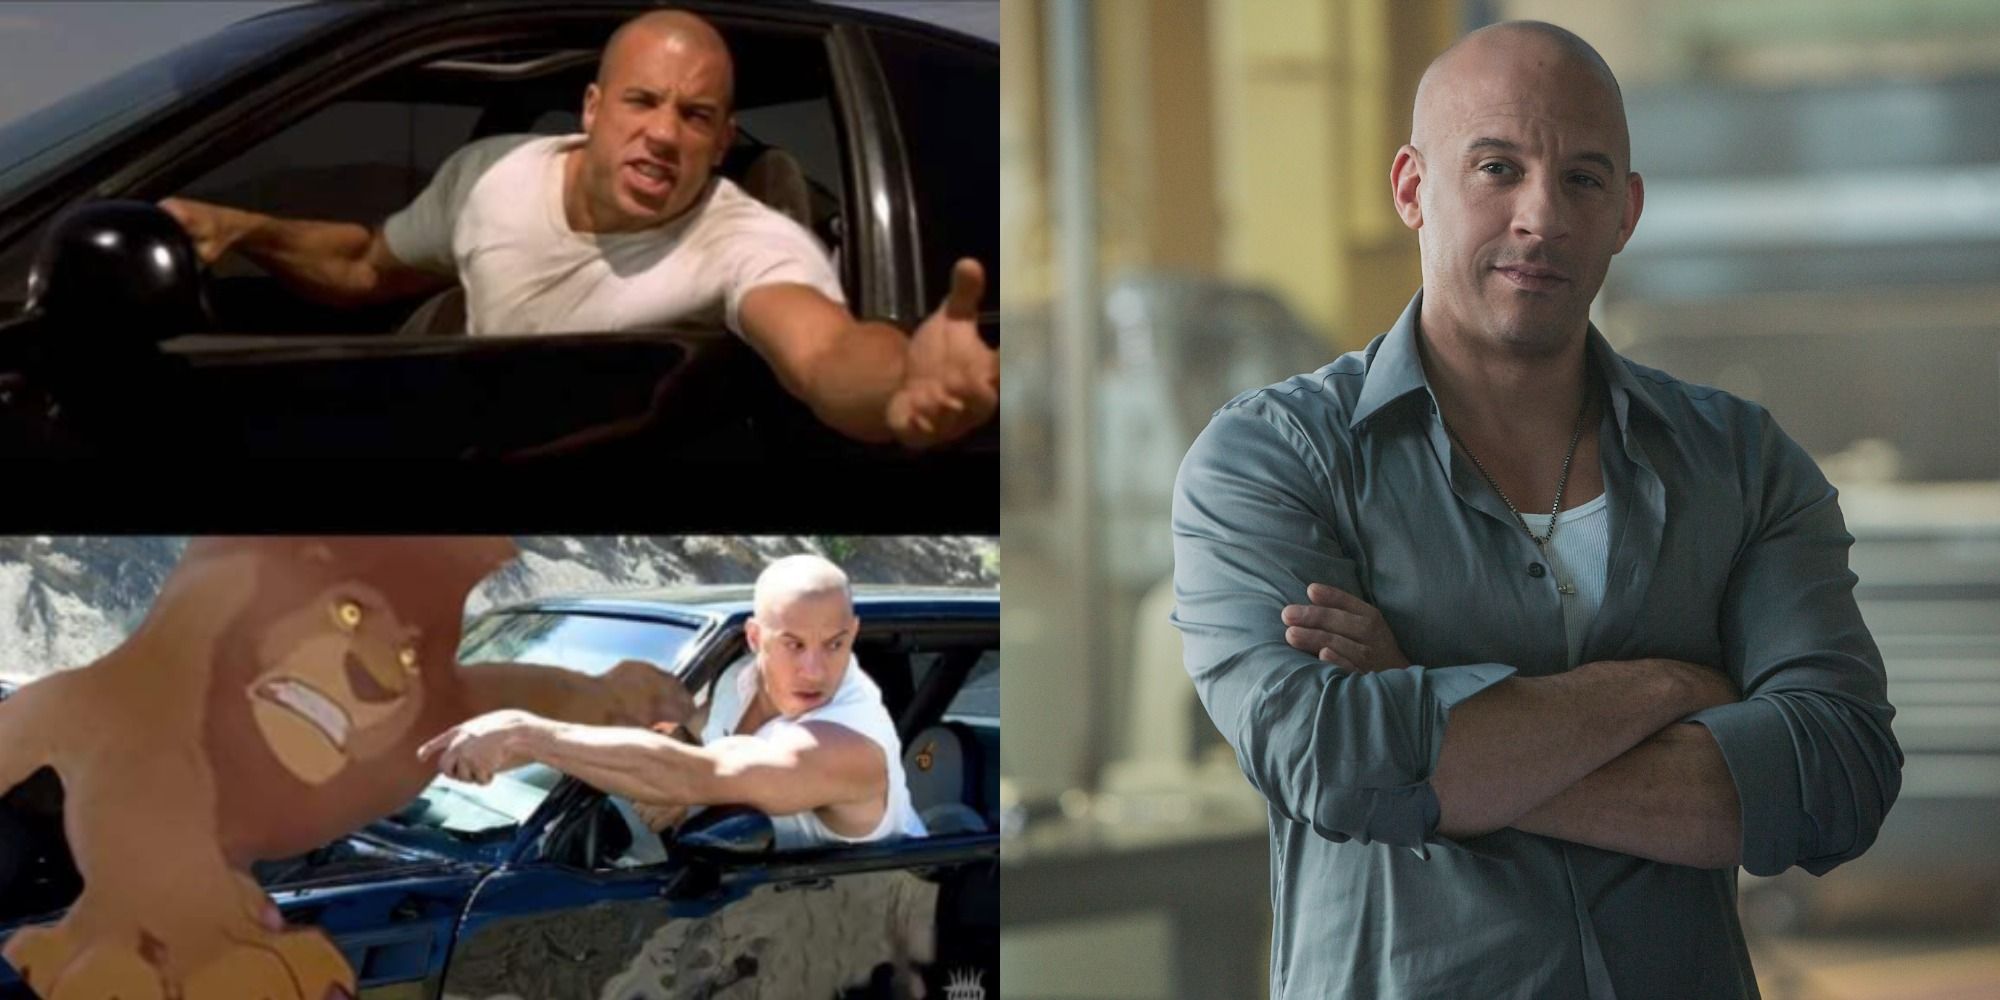 Family meme toretto Dominic Toretto/Quotes